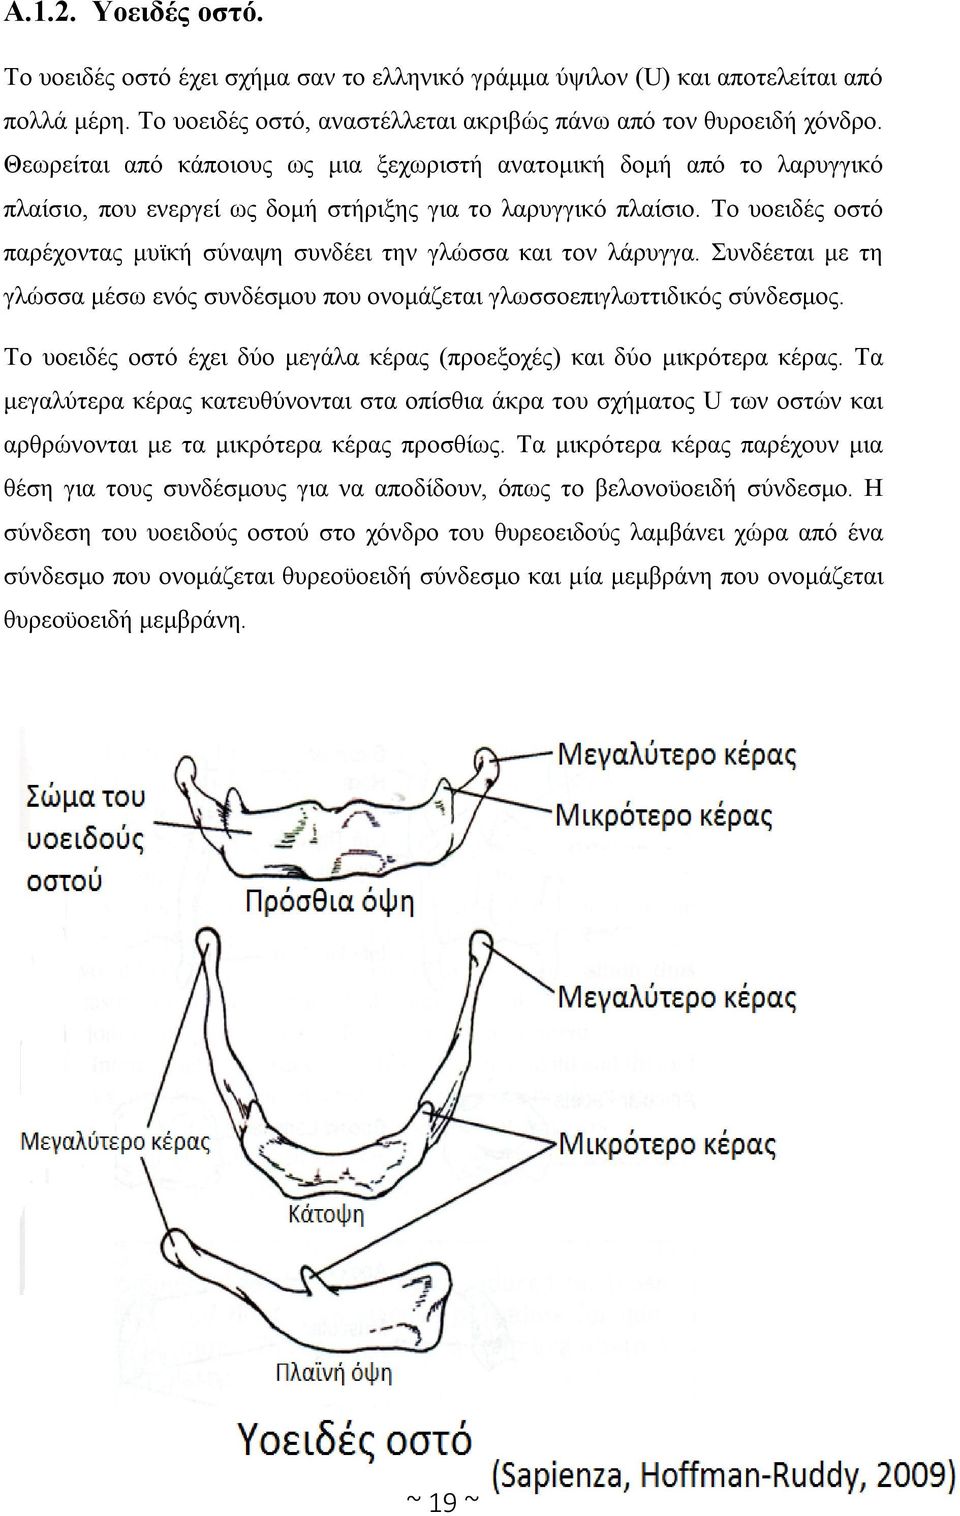 Το υοειδές οστό παρέχοντας μυϊκή σύναψη συνδέει την γλώσσα και τον λάρυγγα. Συνδέεται με τη γλώσσα μέσω ενός συνδέσμου που ονομάζεται γλωσσοεπιγλωττιδικός σύνδεσμος.